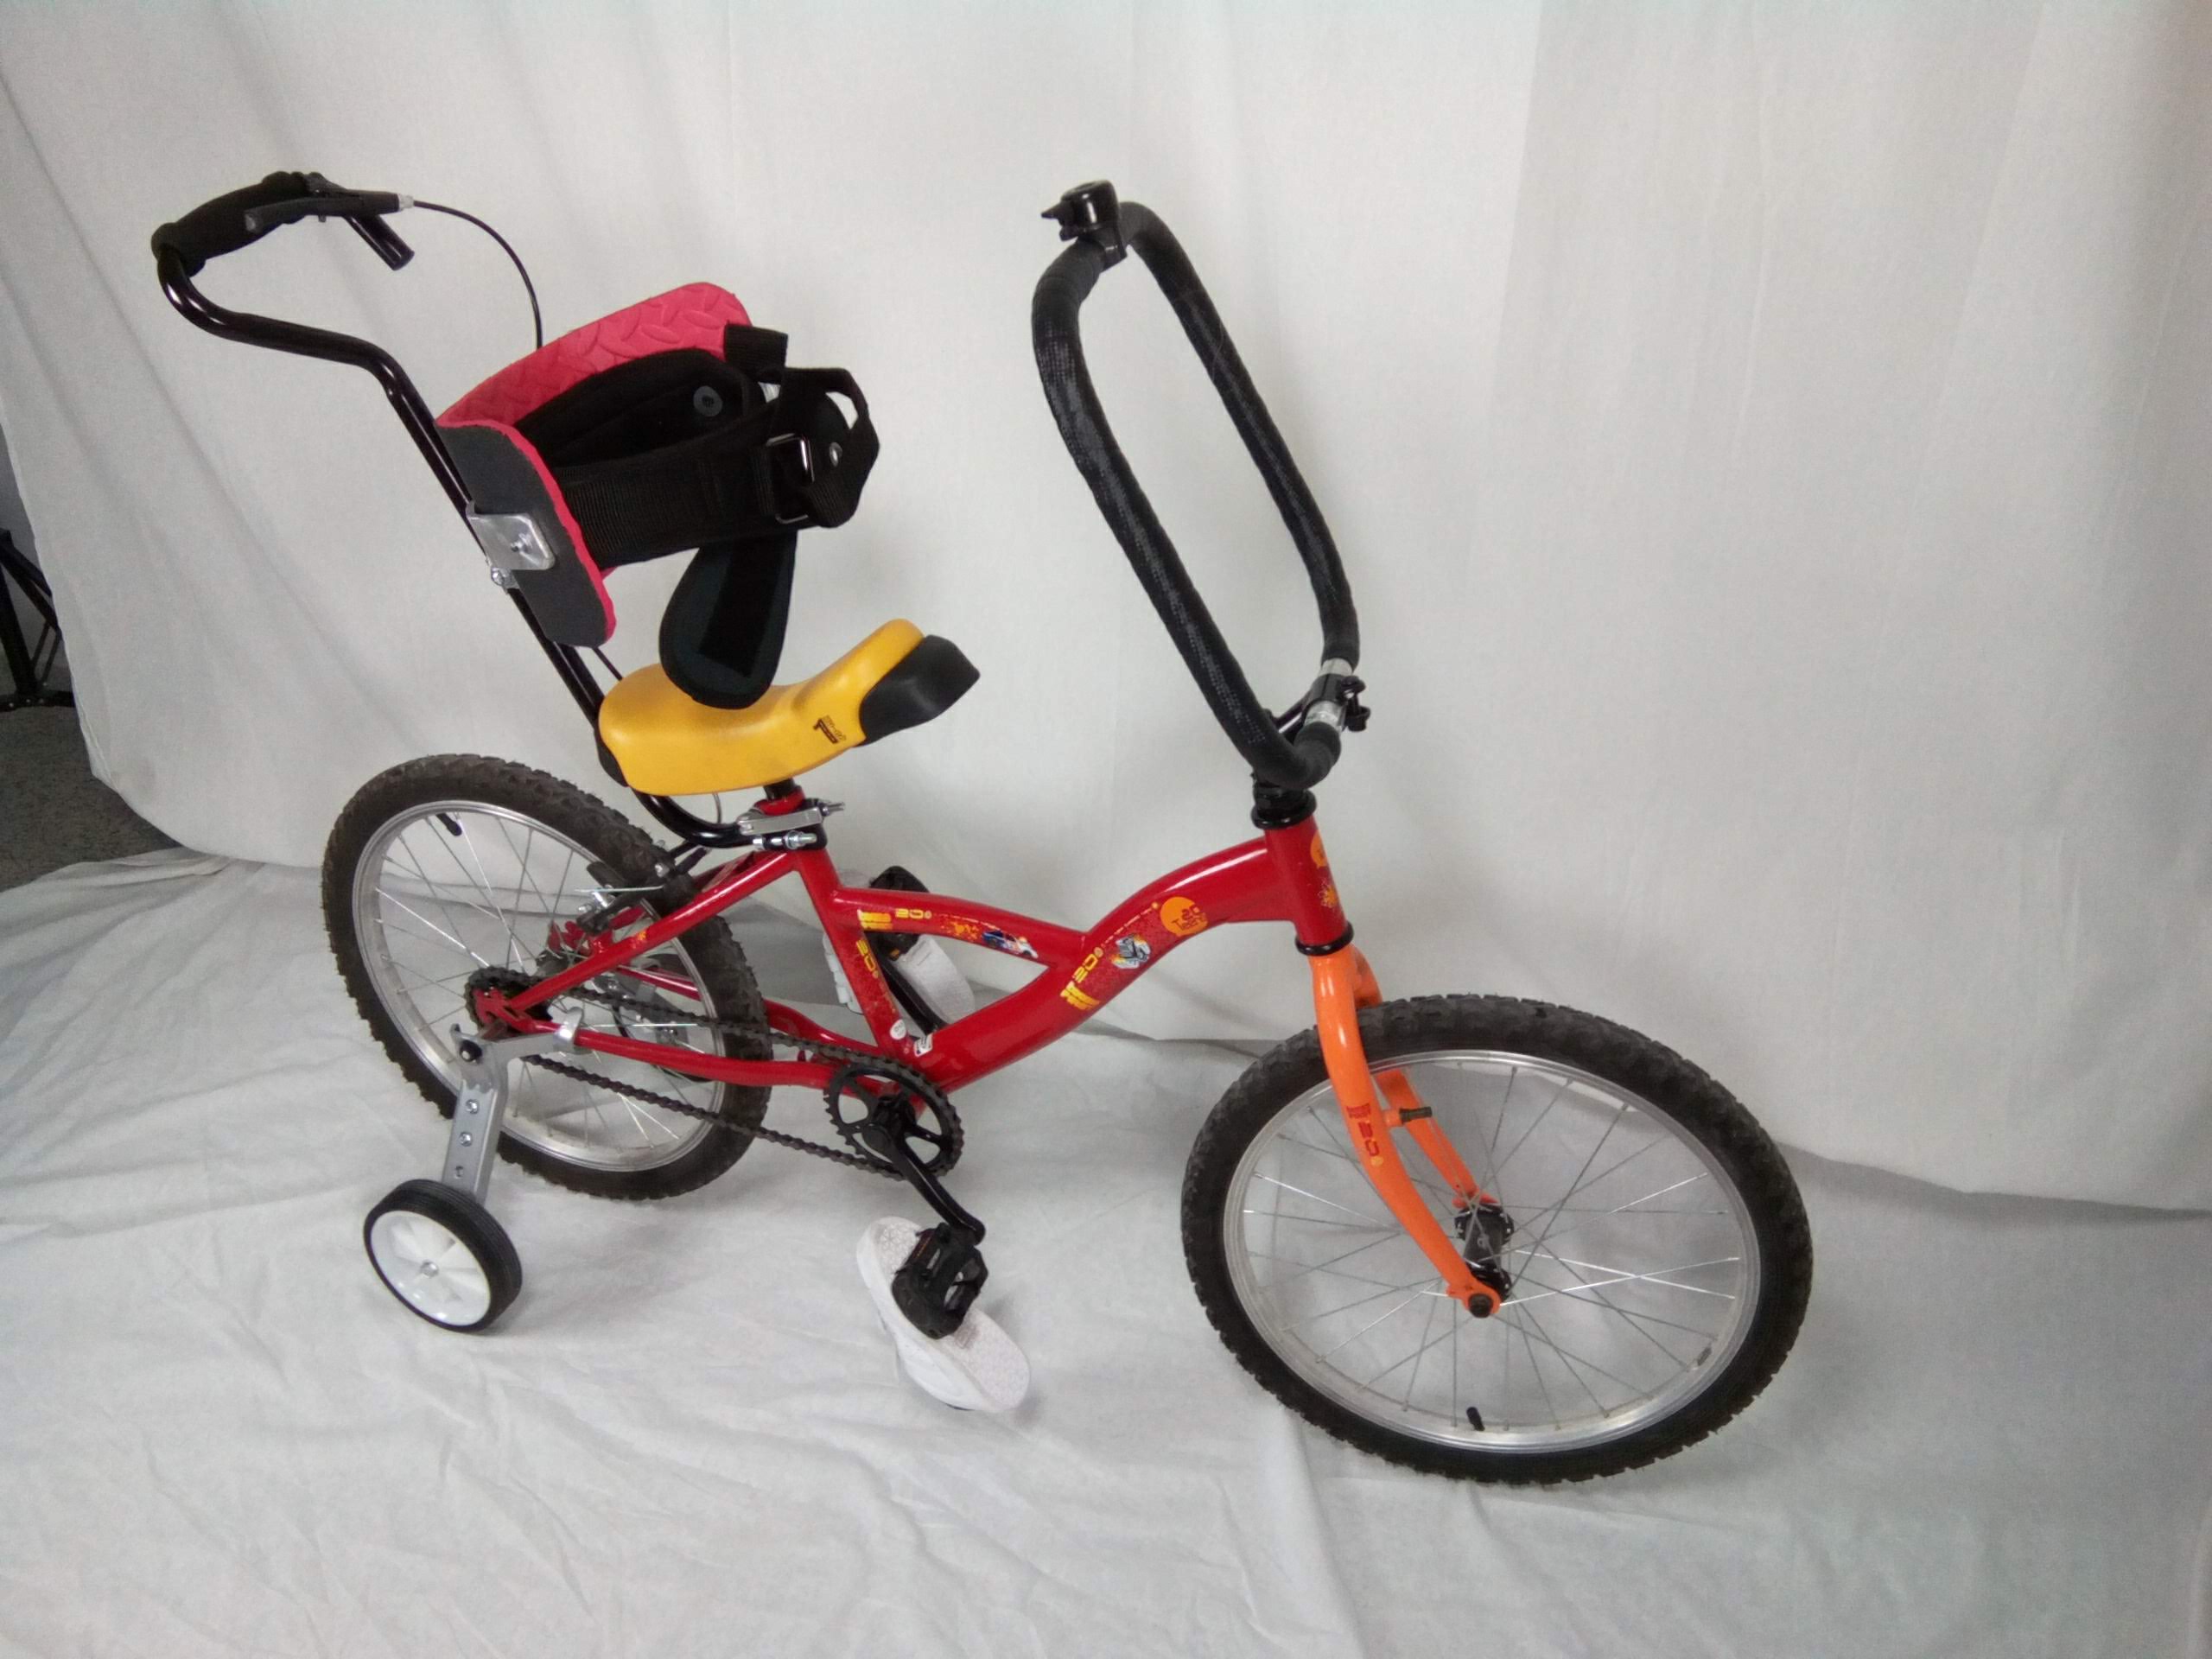 Detalles triciclo adaptado niño con necesidades especiales